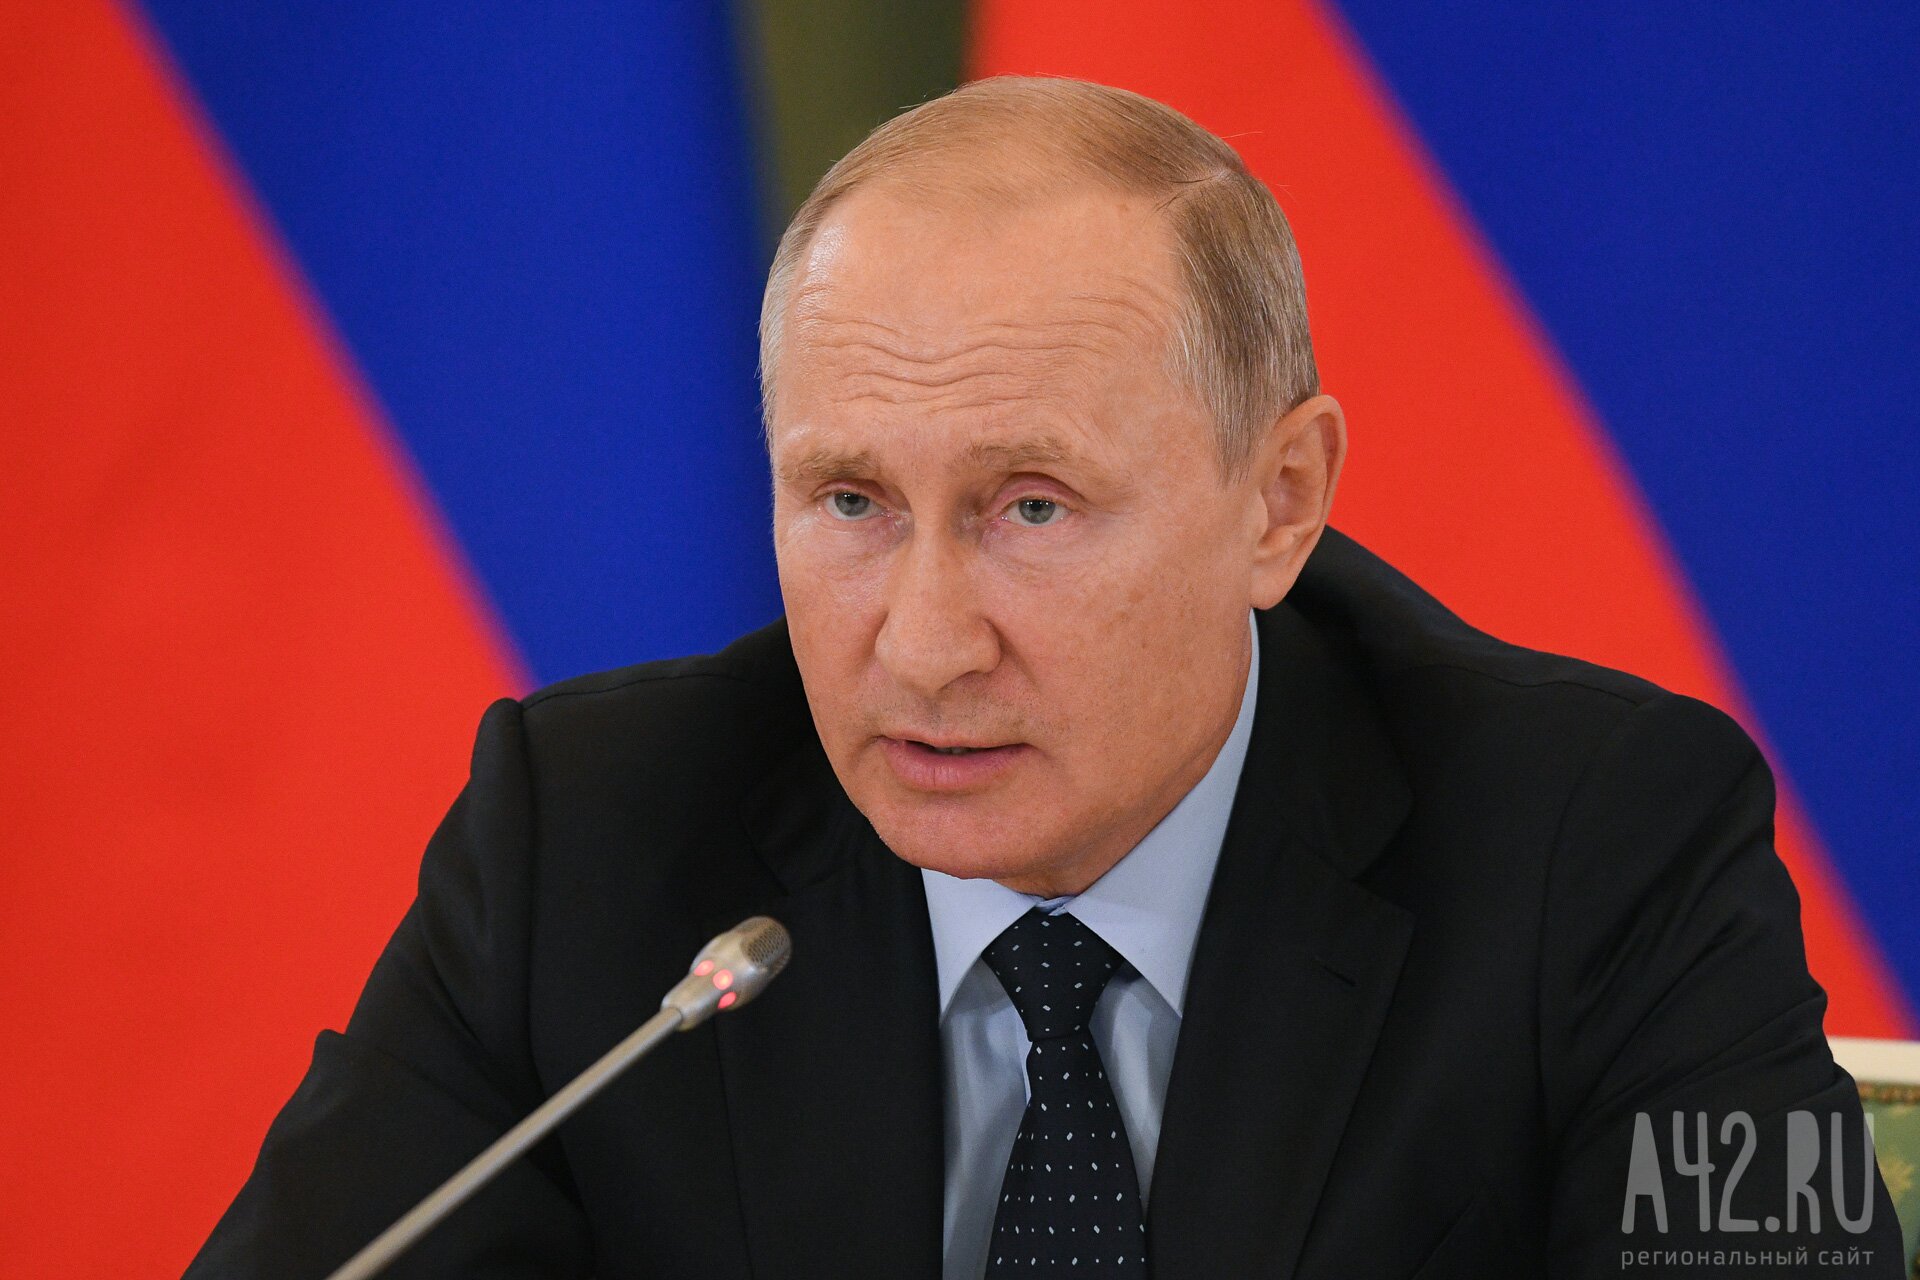 Путин: цены на продукты внутри России могут быть ниже, чем на мировом рынке